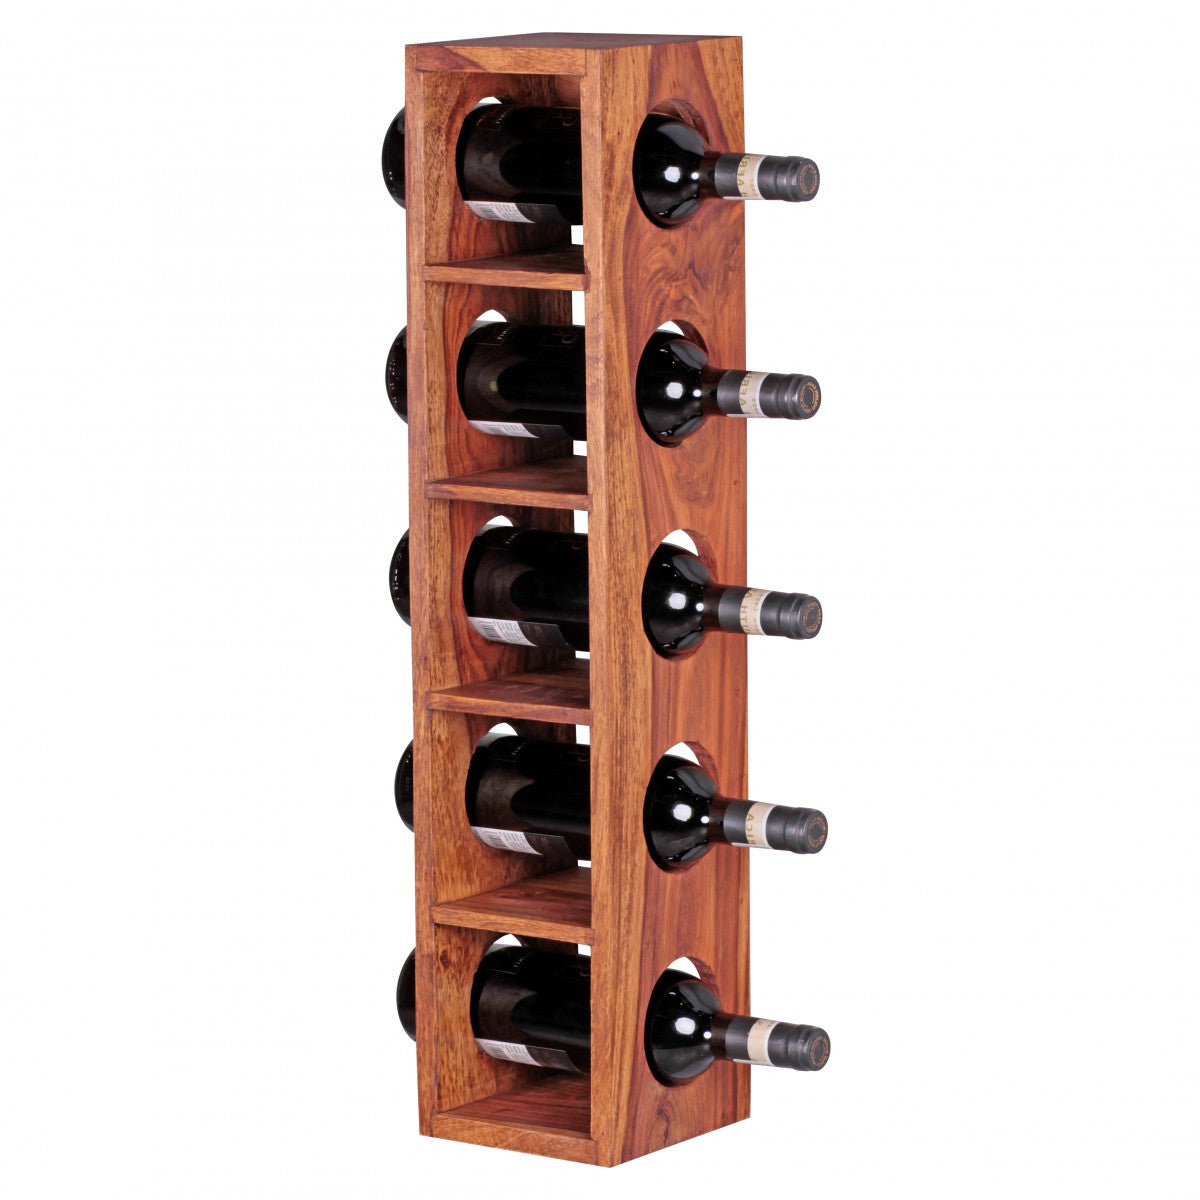 Casier à vin en bois massif de Nancy - Bois massif - Acacia - Sheesham - 5 bouteilles - 70cm - Porte-vin